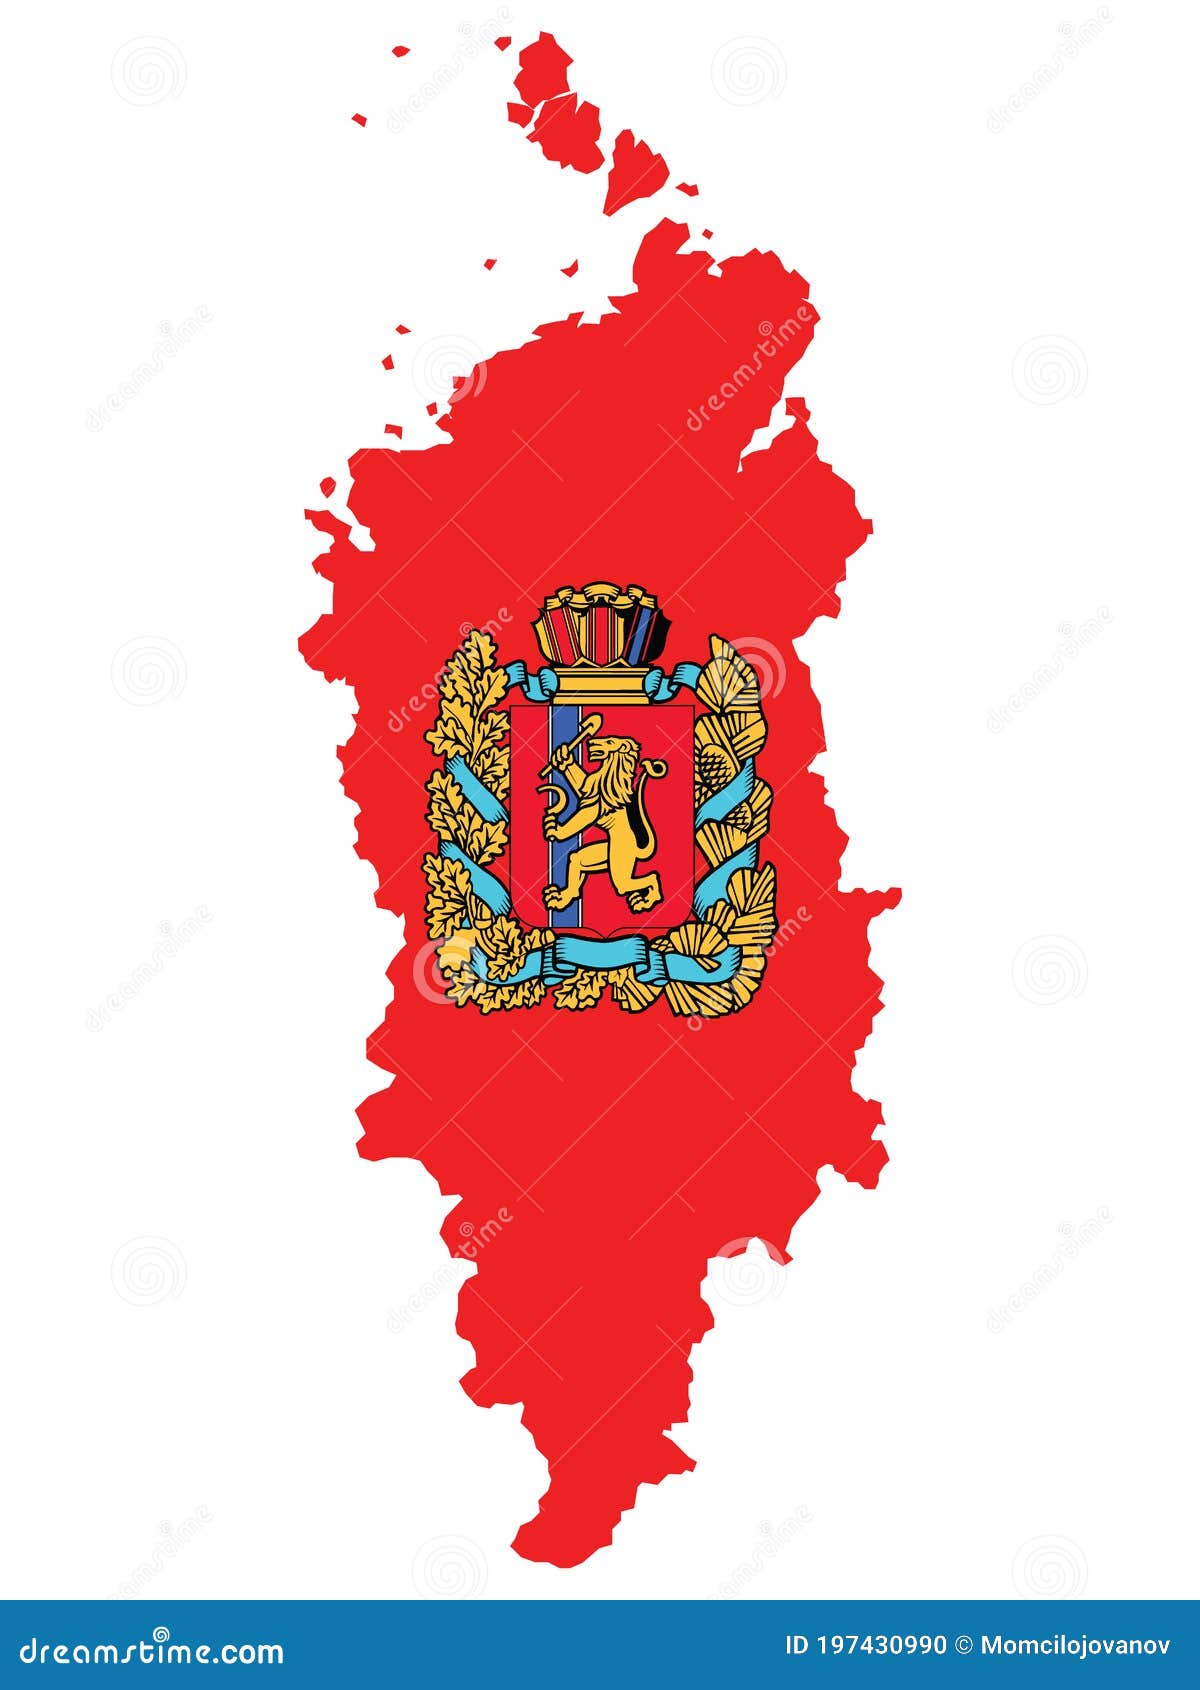 Флаг Красноярского Края Фото